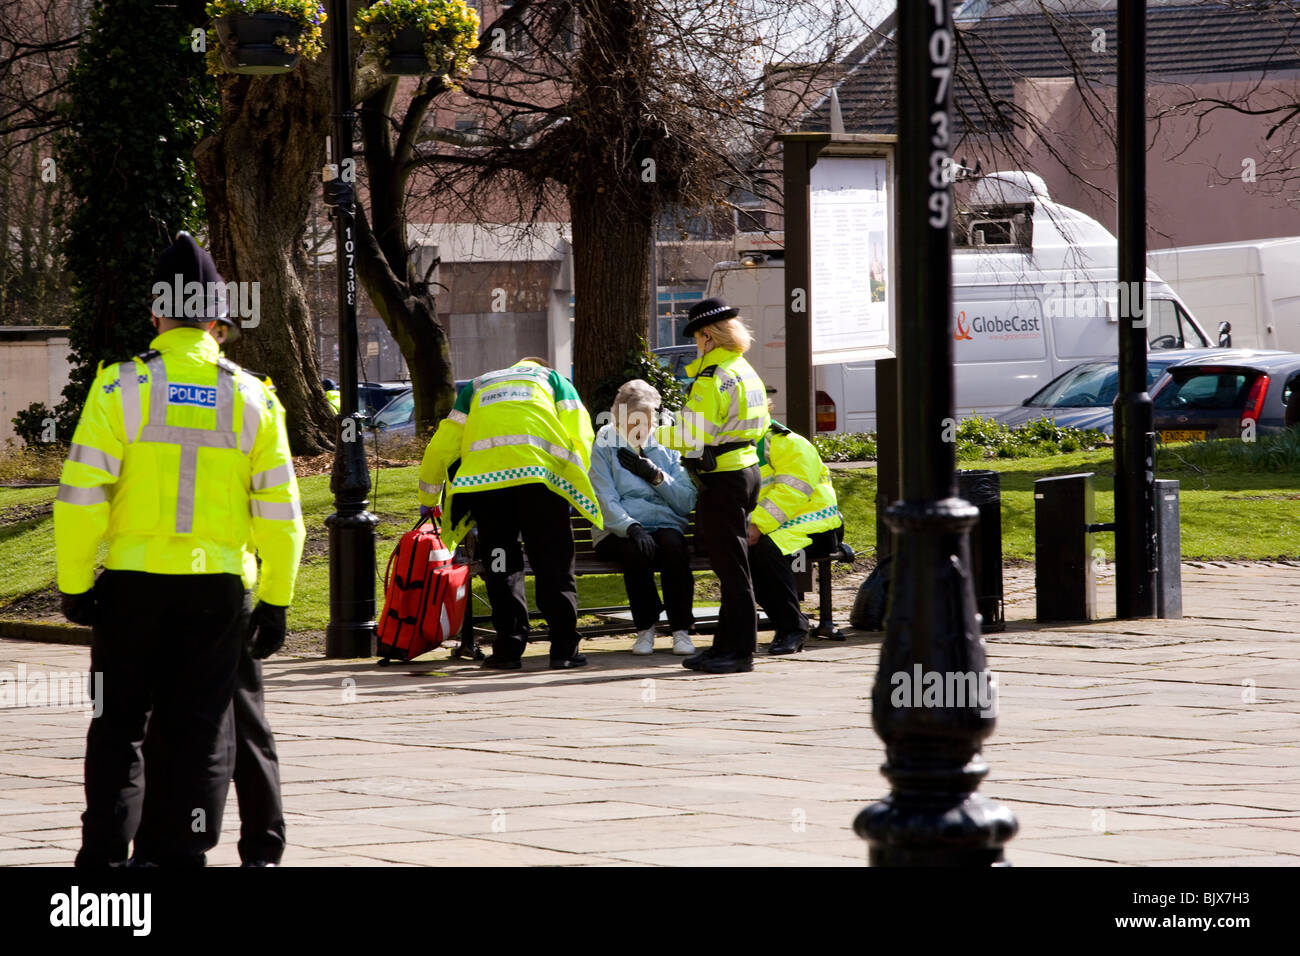 Polizei helfen, eine ältere Dame hinter der Menge Barriere im Derby am Gründonnerstag feiern und nehmen sie, sich hinzusetzen. Stockfoto